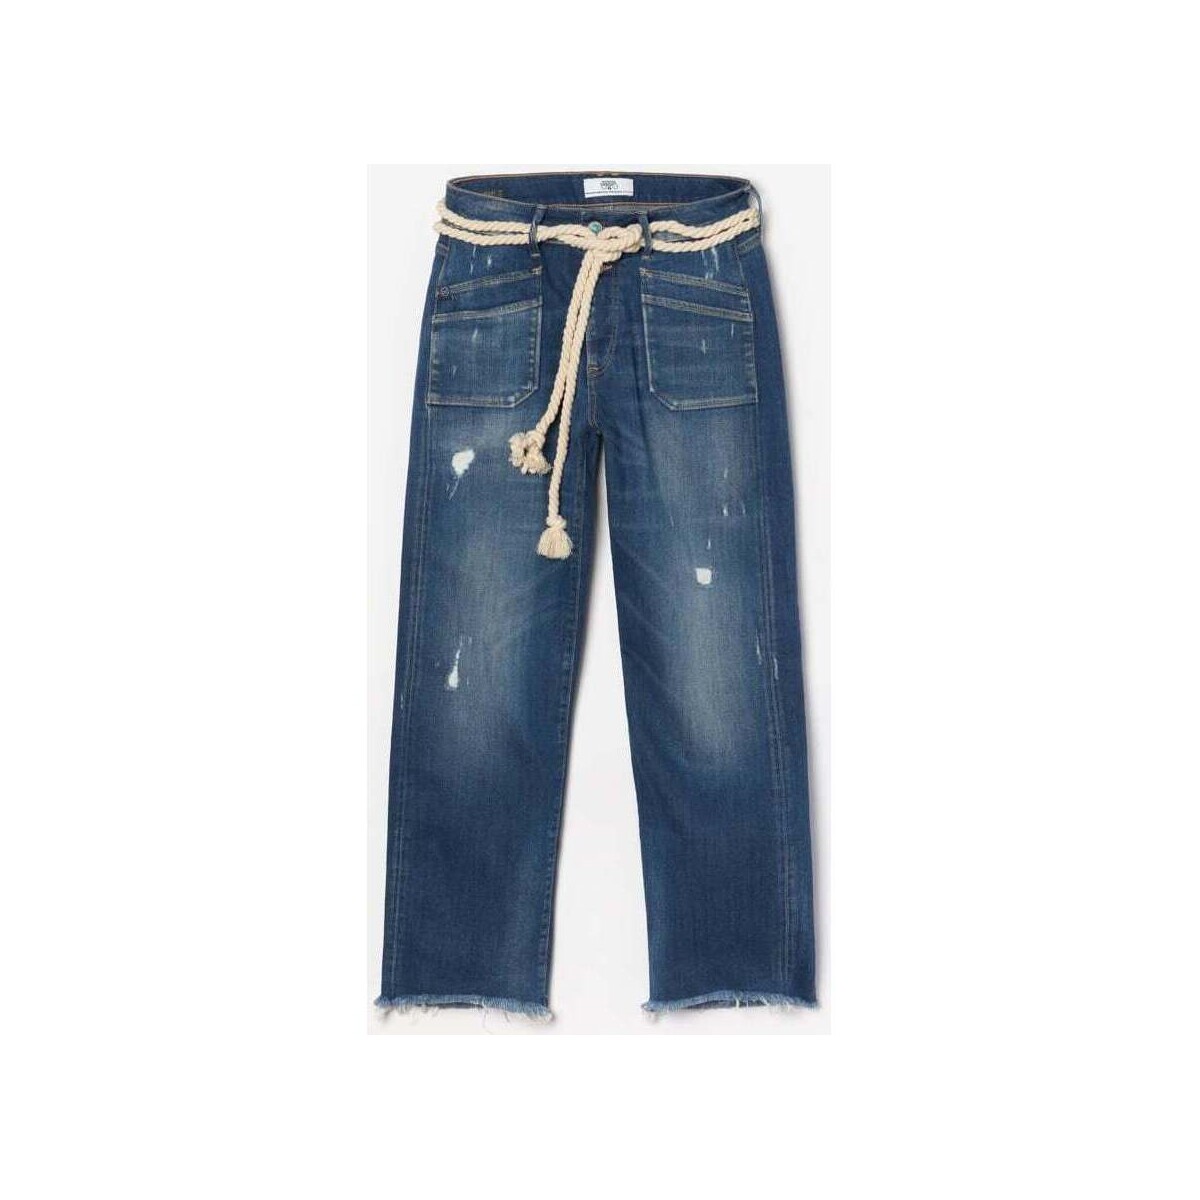 Le Temps des Cerises Bleu Pricilia taille haute 7/8ème jeans destroy bleu N2aLMMxV